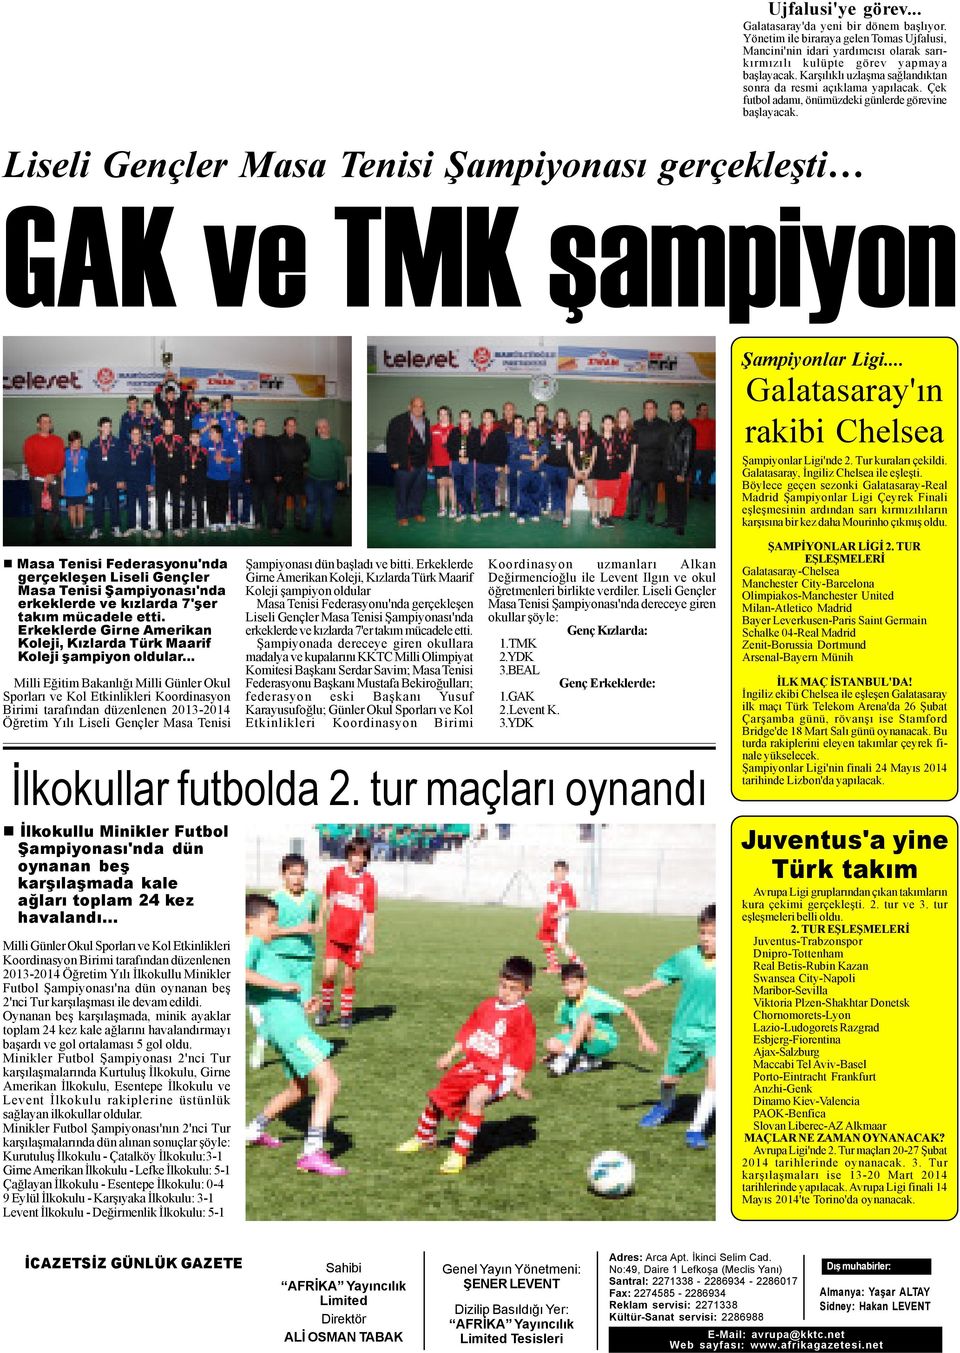 Liseli Gençler Masa Tenisi Þampiyonasý gerçekleþti GAK ve TMK þampiyon Þampiyonlar Ligi... Galatasaray'ýn rakibi Chelsea Þampiyonlar Ligi'nde 2. Tur kuralarý çekildi.